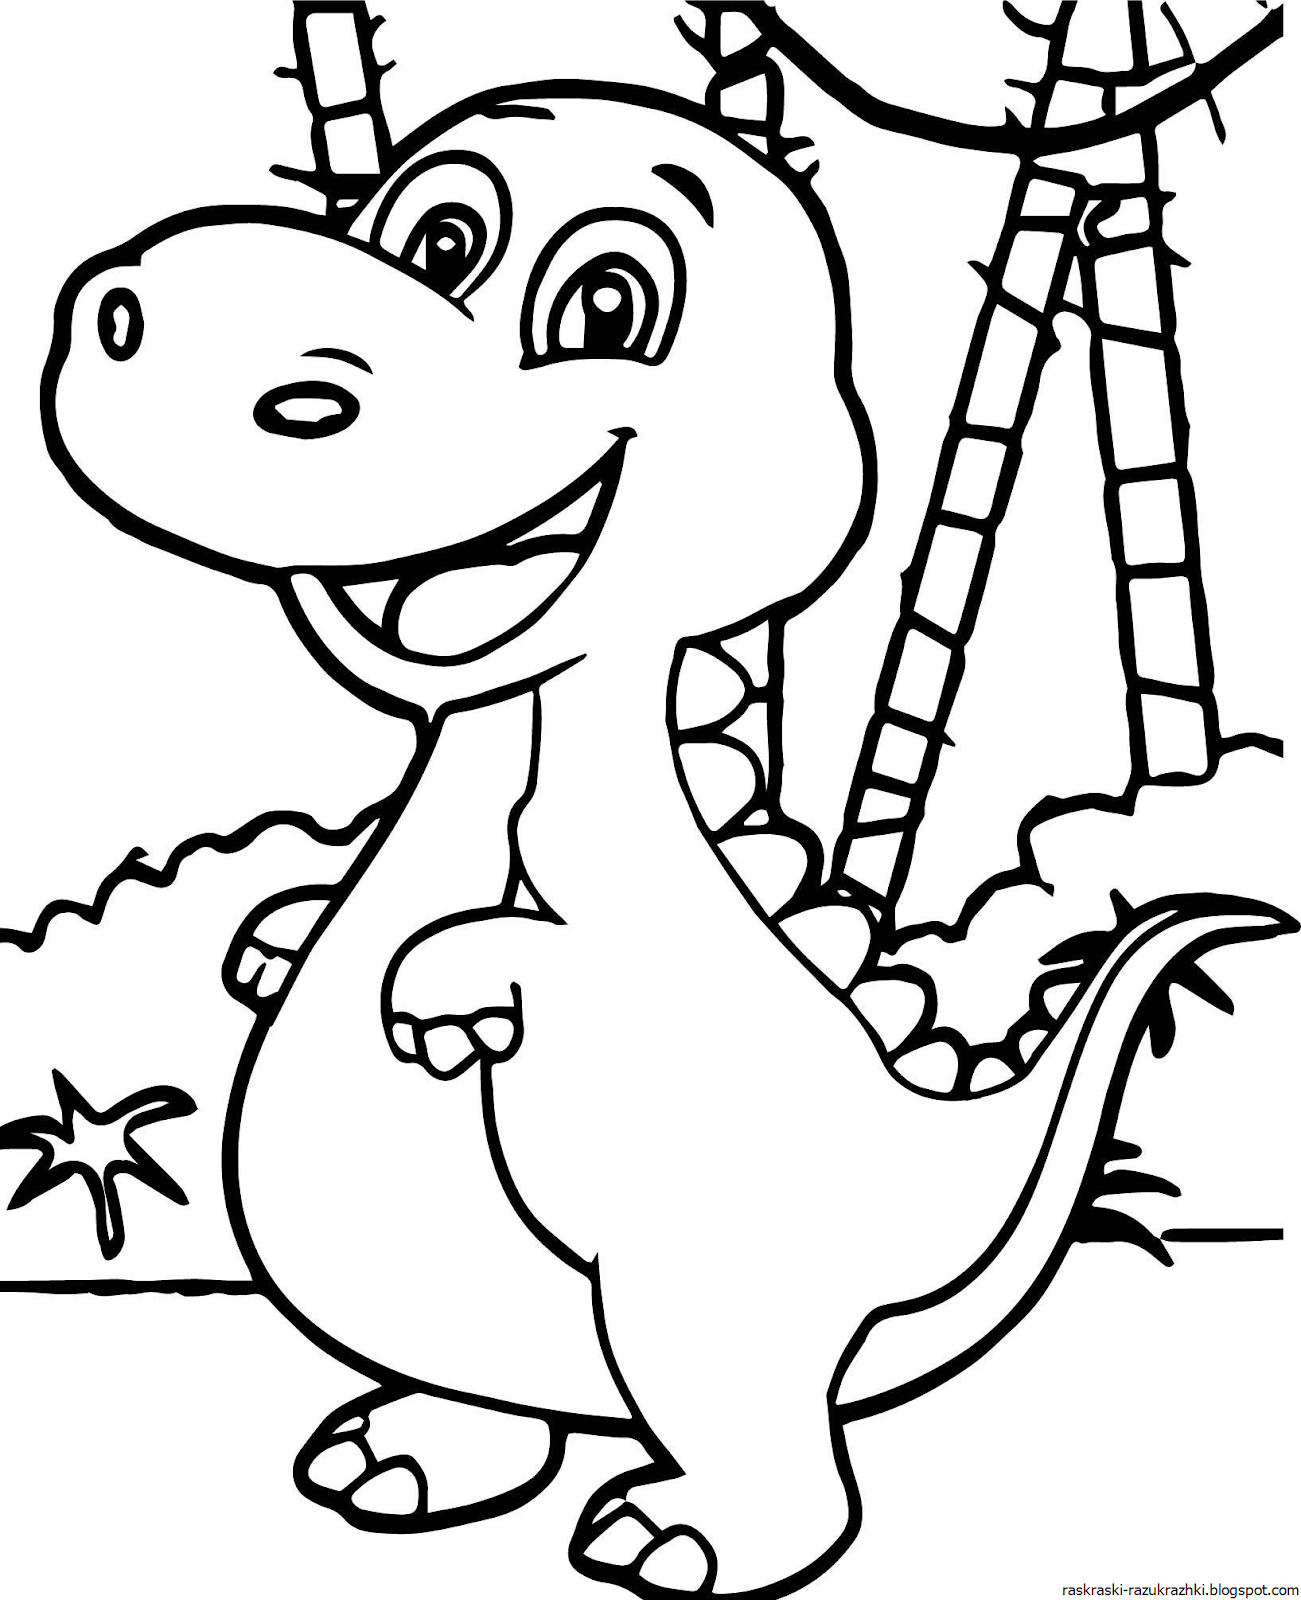 Раскраски динозавры для мальчиков и девочек распечатать а4 и а5 без регистрации